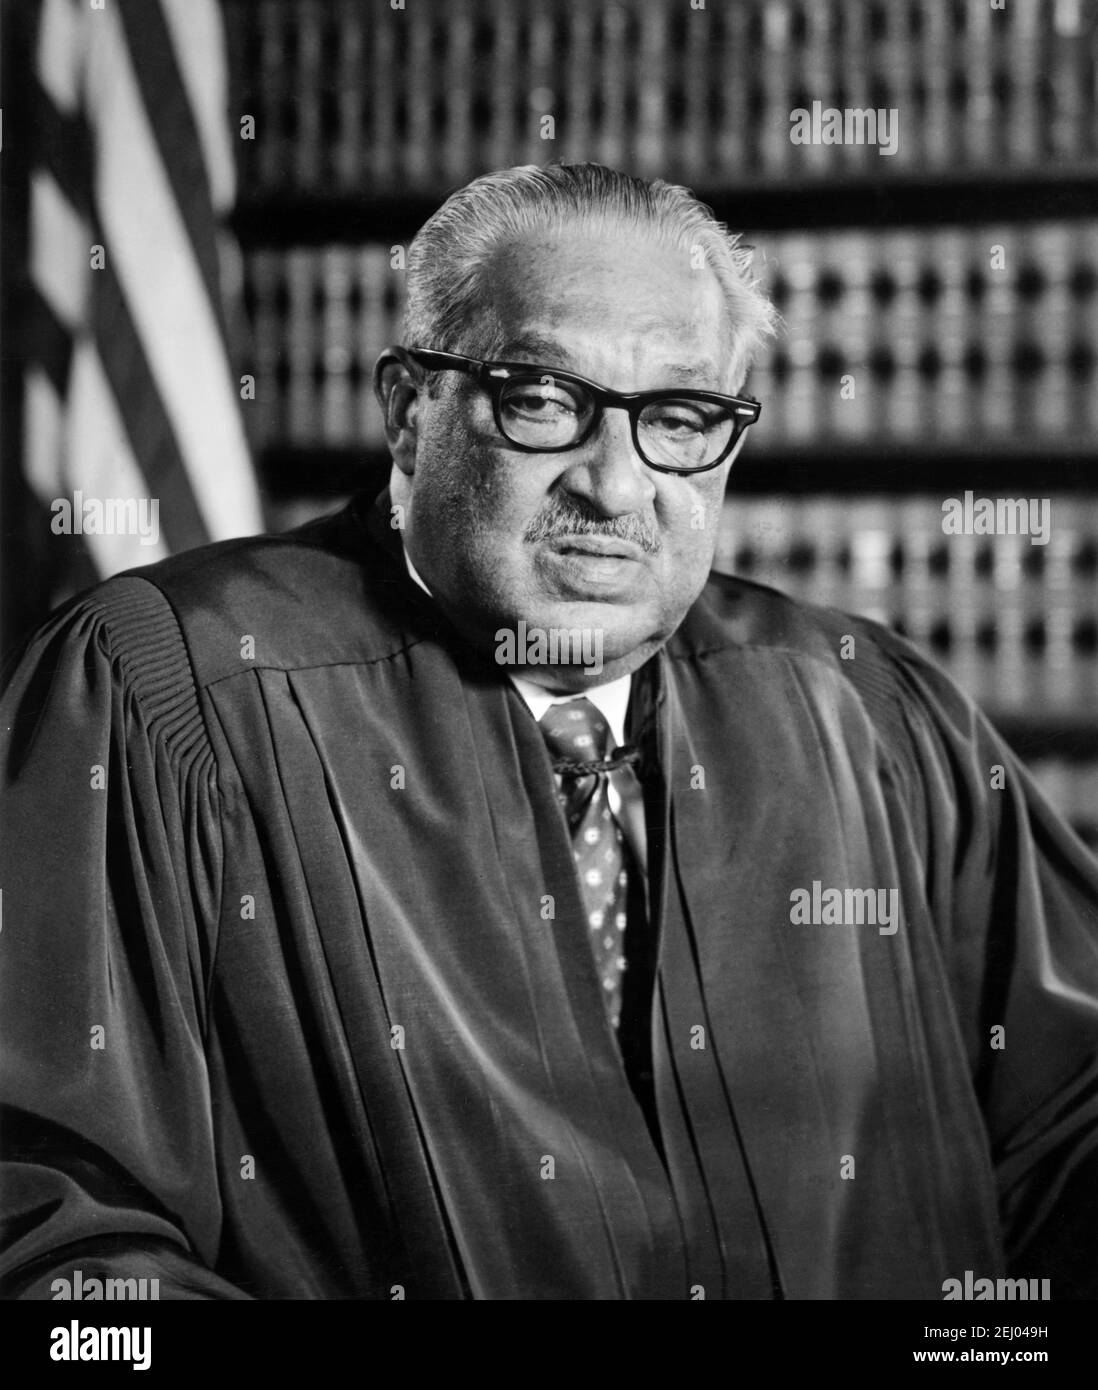 Thurgood Marshall. Porträt der ersten afroamerikanischen Justiz, die dem Obersten Gerichtshof der Vereinigten Staaten, Thurgood Marshall (1908-1993), dient. Offizielles Foto, 1976 Stockfoto